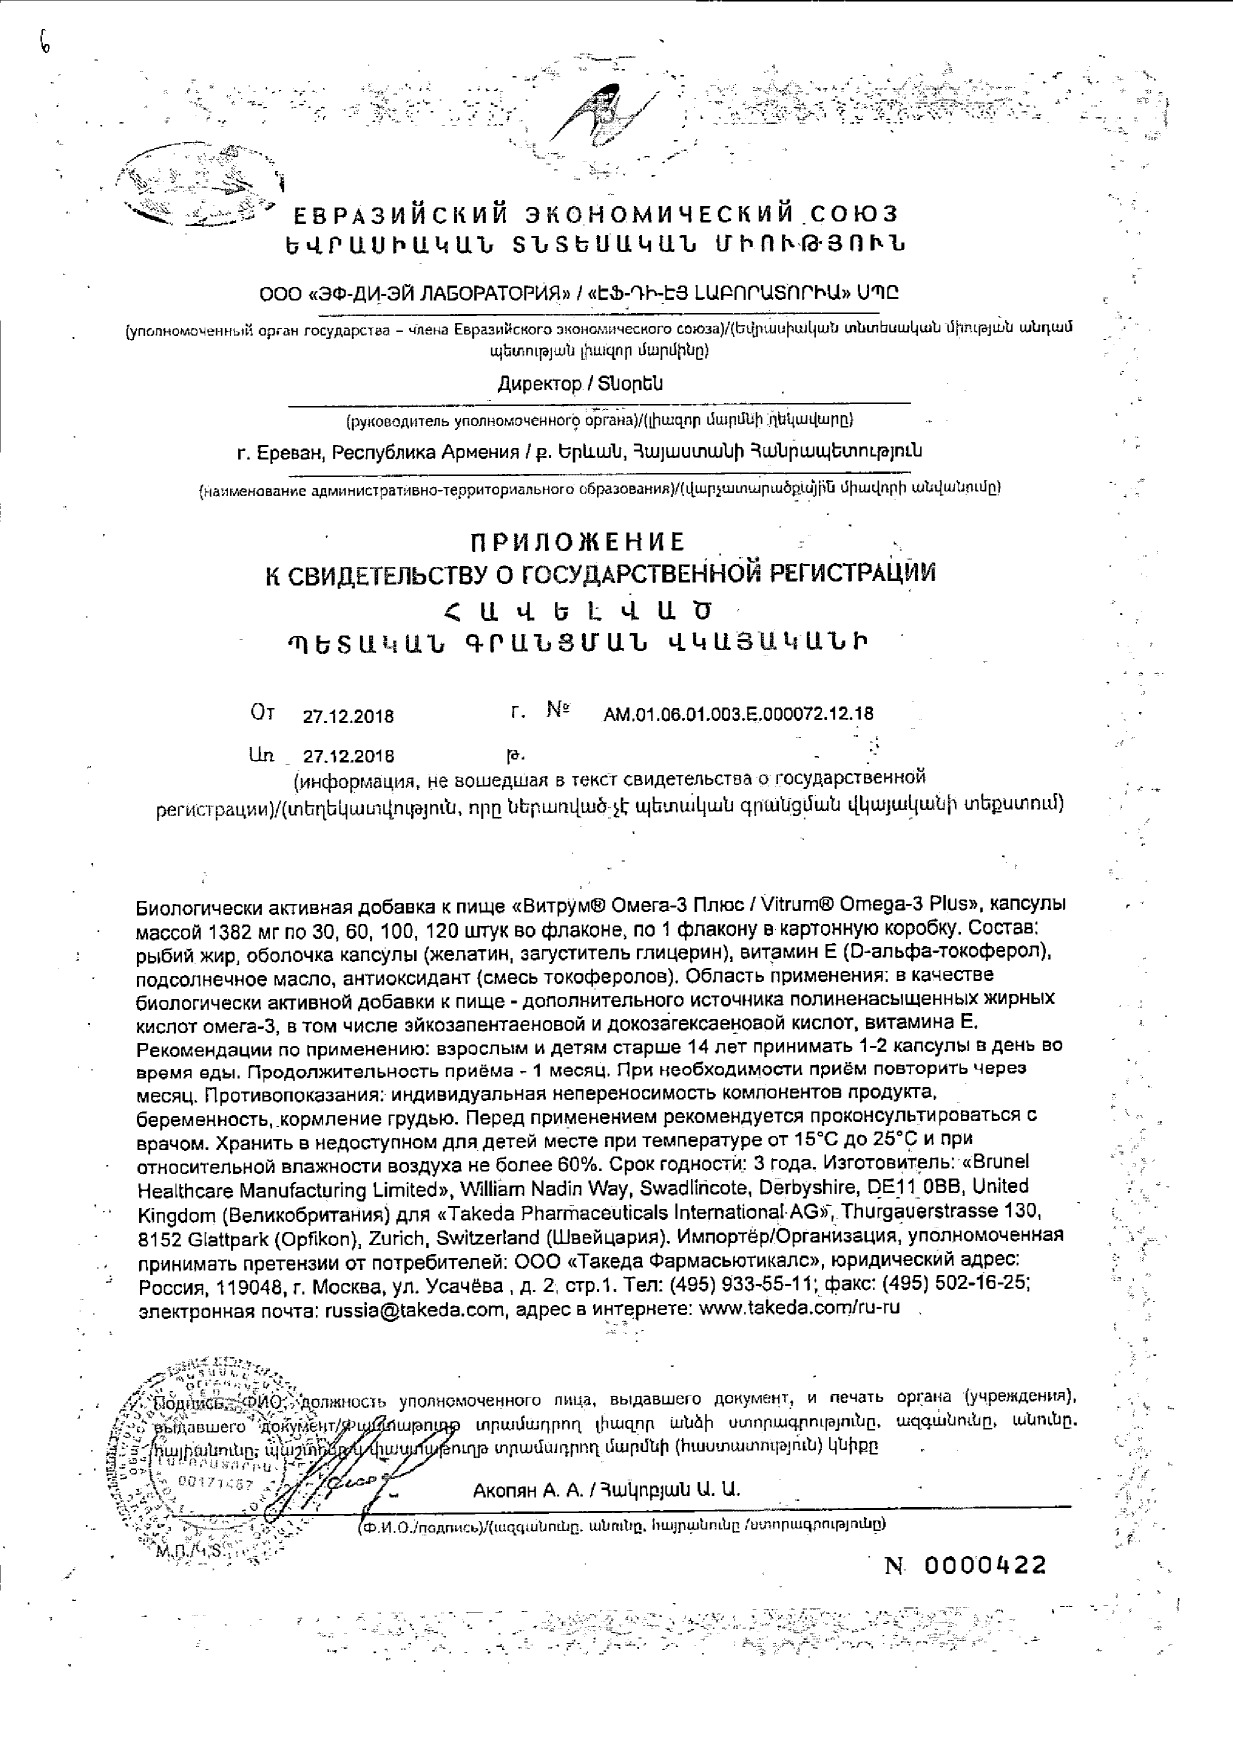 Витрум Омега-3 Плюс капсулы 1382мг 60шт купить лекарство круглосуточно в Москве, официальная инструкция по применению